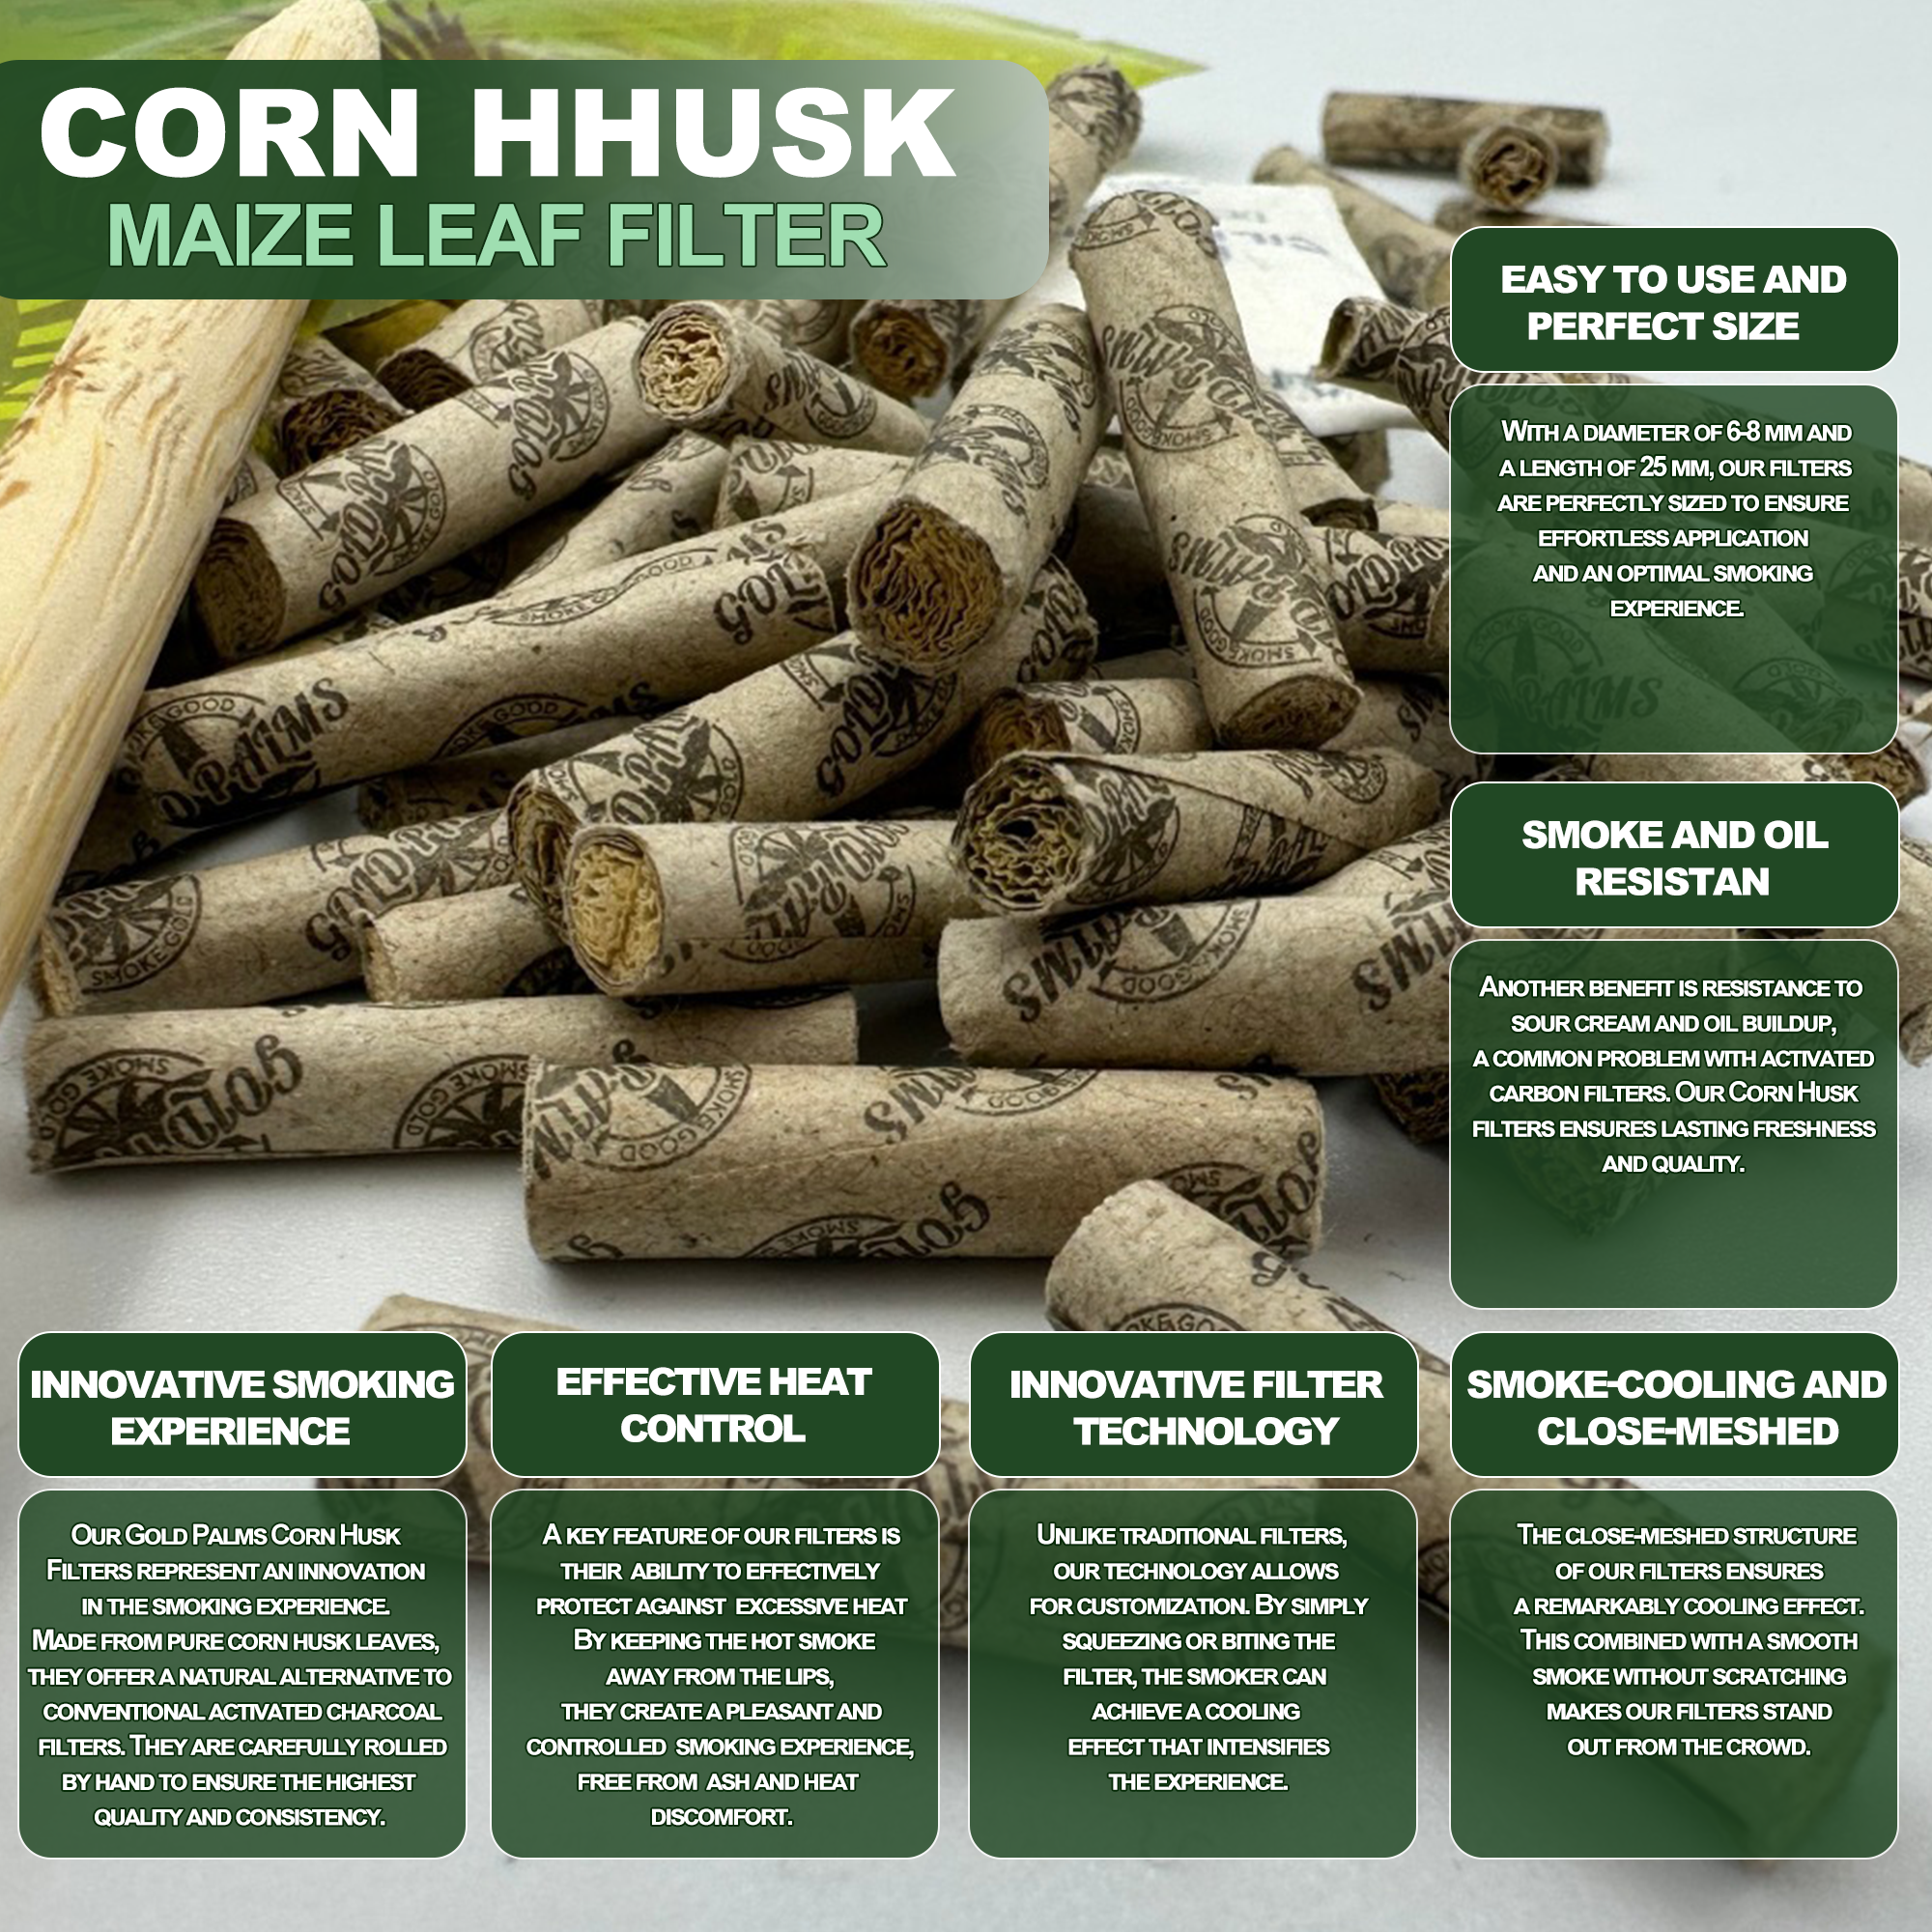 GOLD PALMS Corn Husk Filter als umweltbewusste Rauchoption, biologisch abbaubar und nachhaltig.